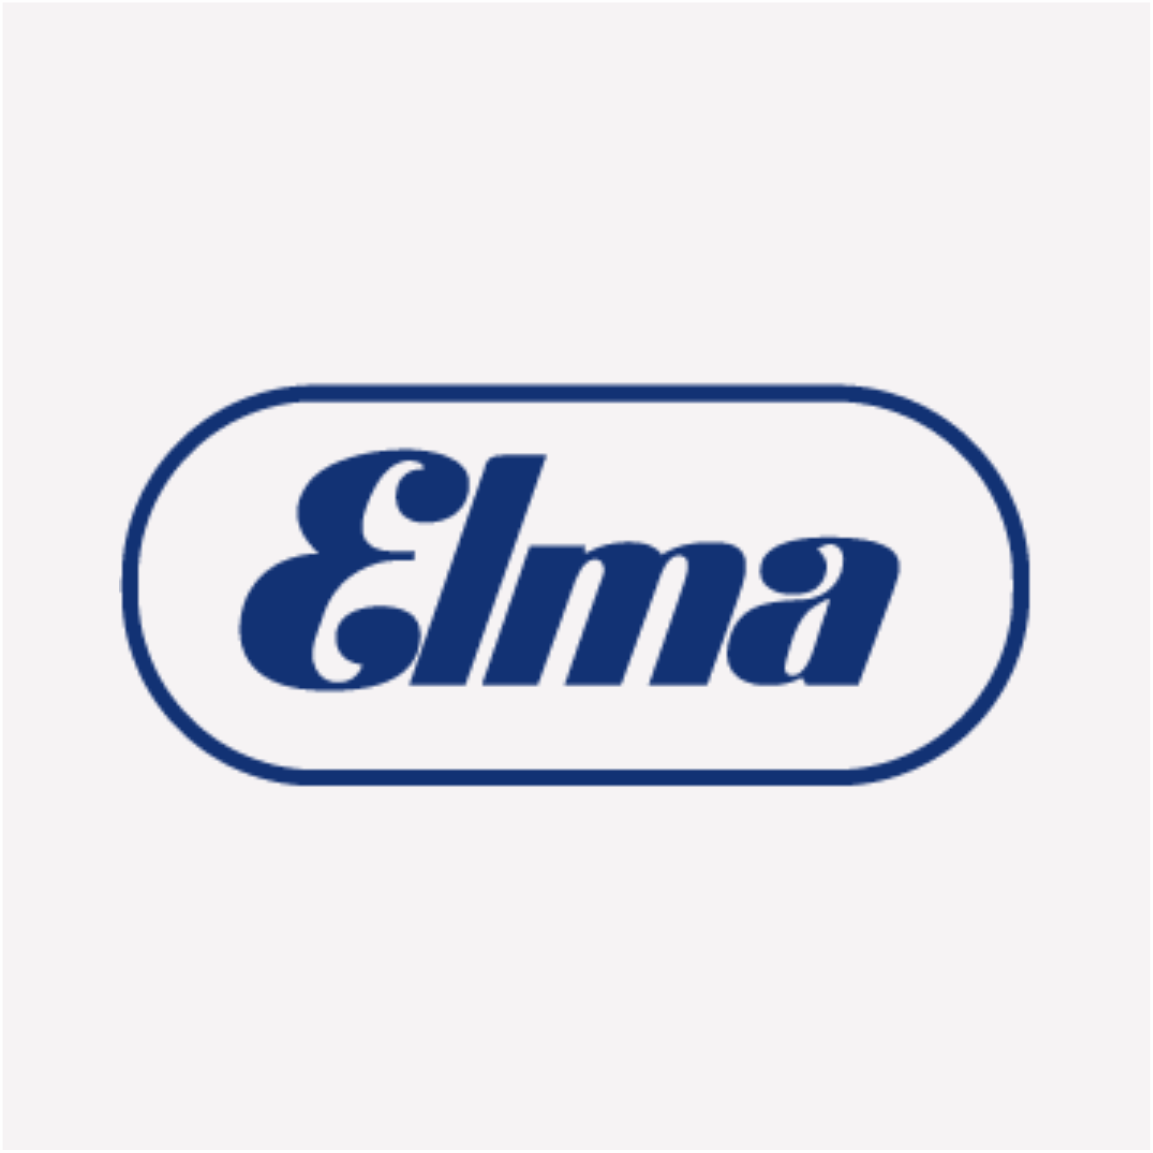 elma_logo